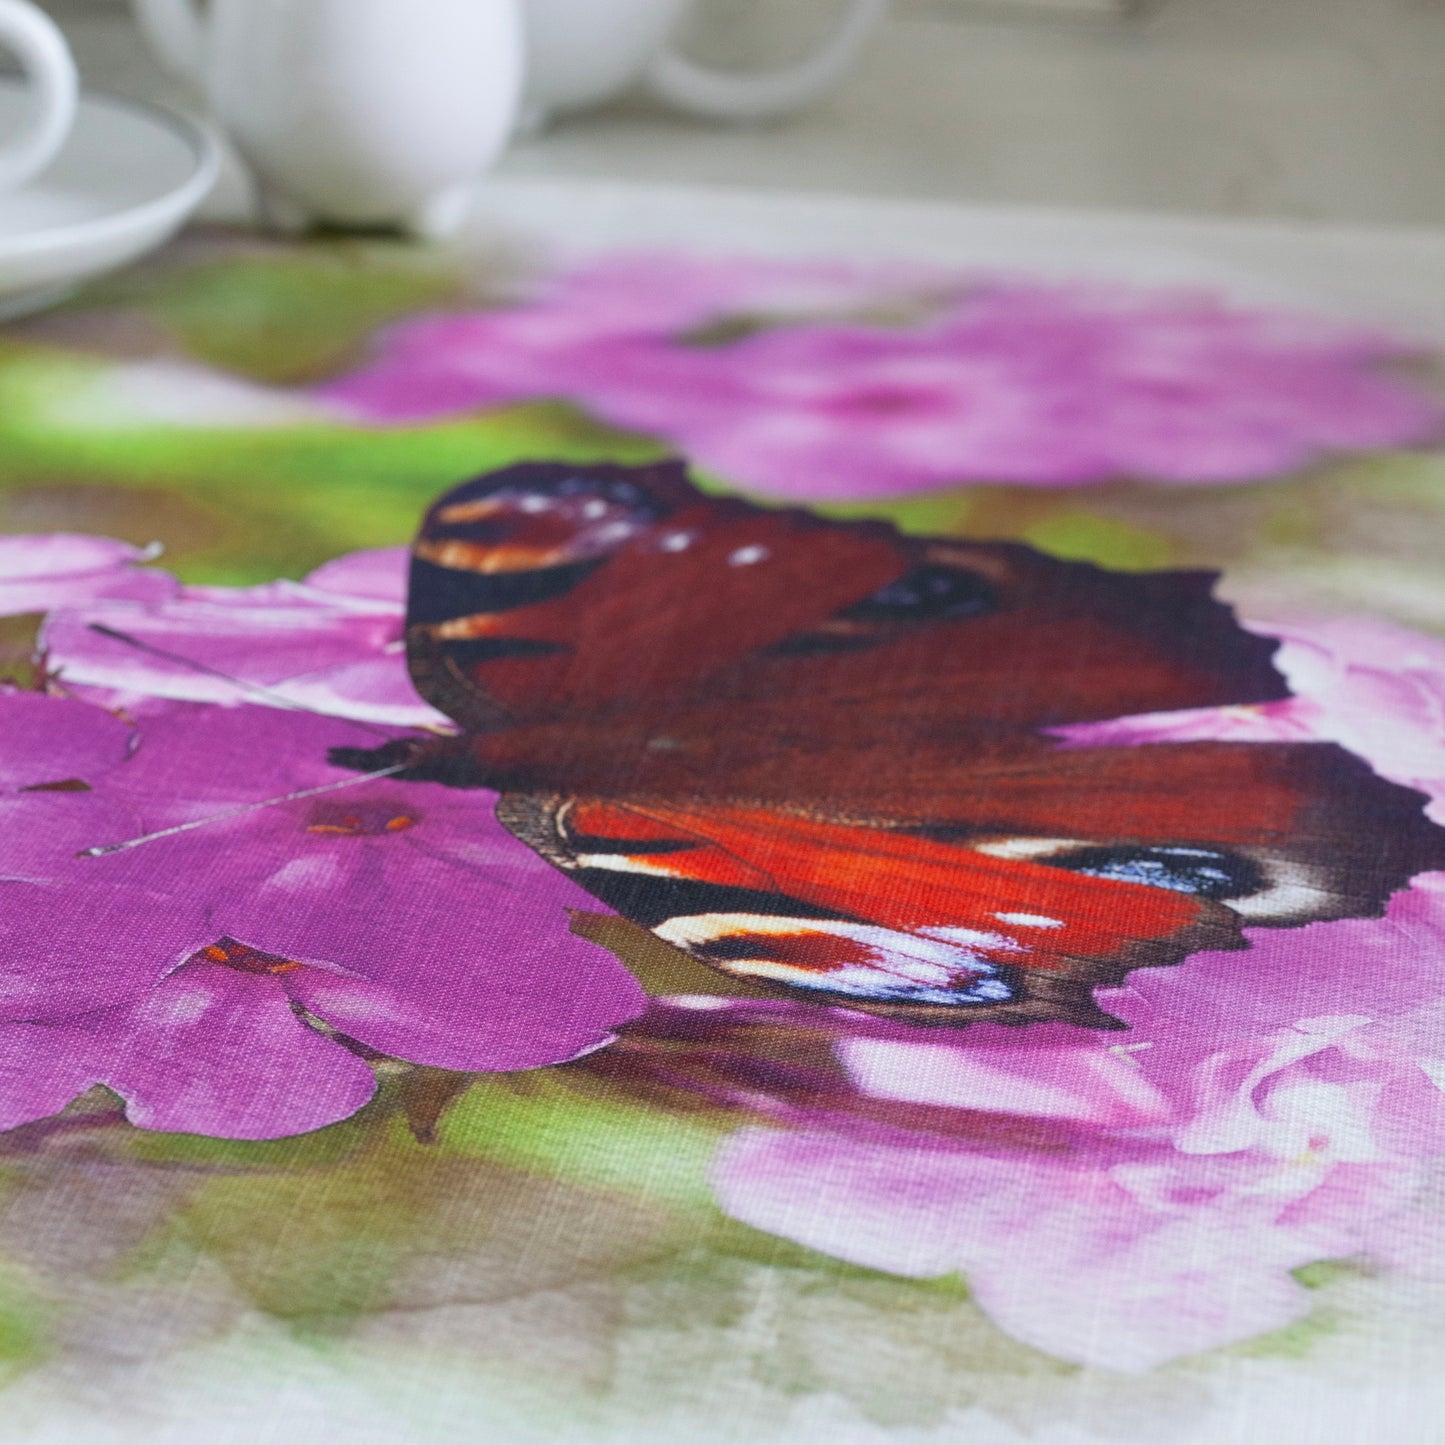 
                  
                    Kylemore Abbey Pink Flowers & Butterflies Tea Towel
                  
                